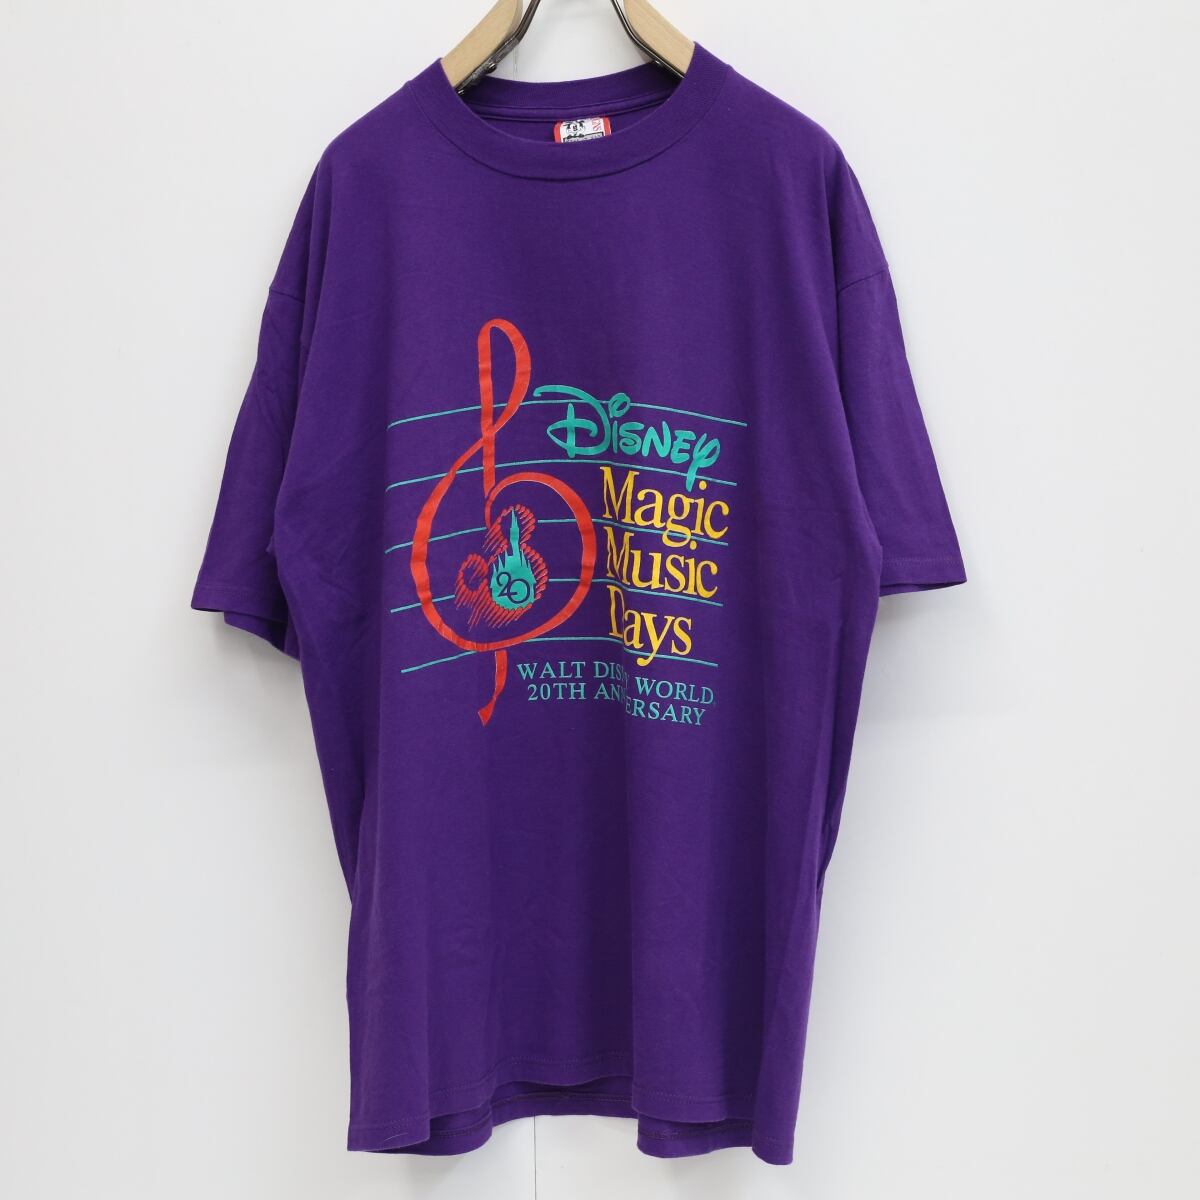 【クリーニング済】Disney Magic Music Days Tシャツ 半袖